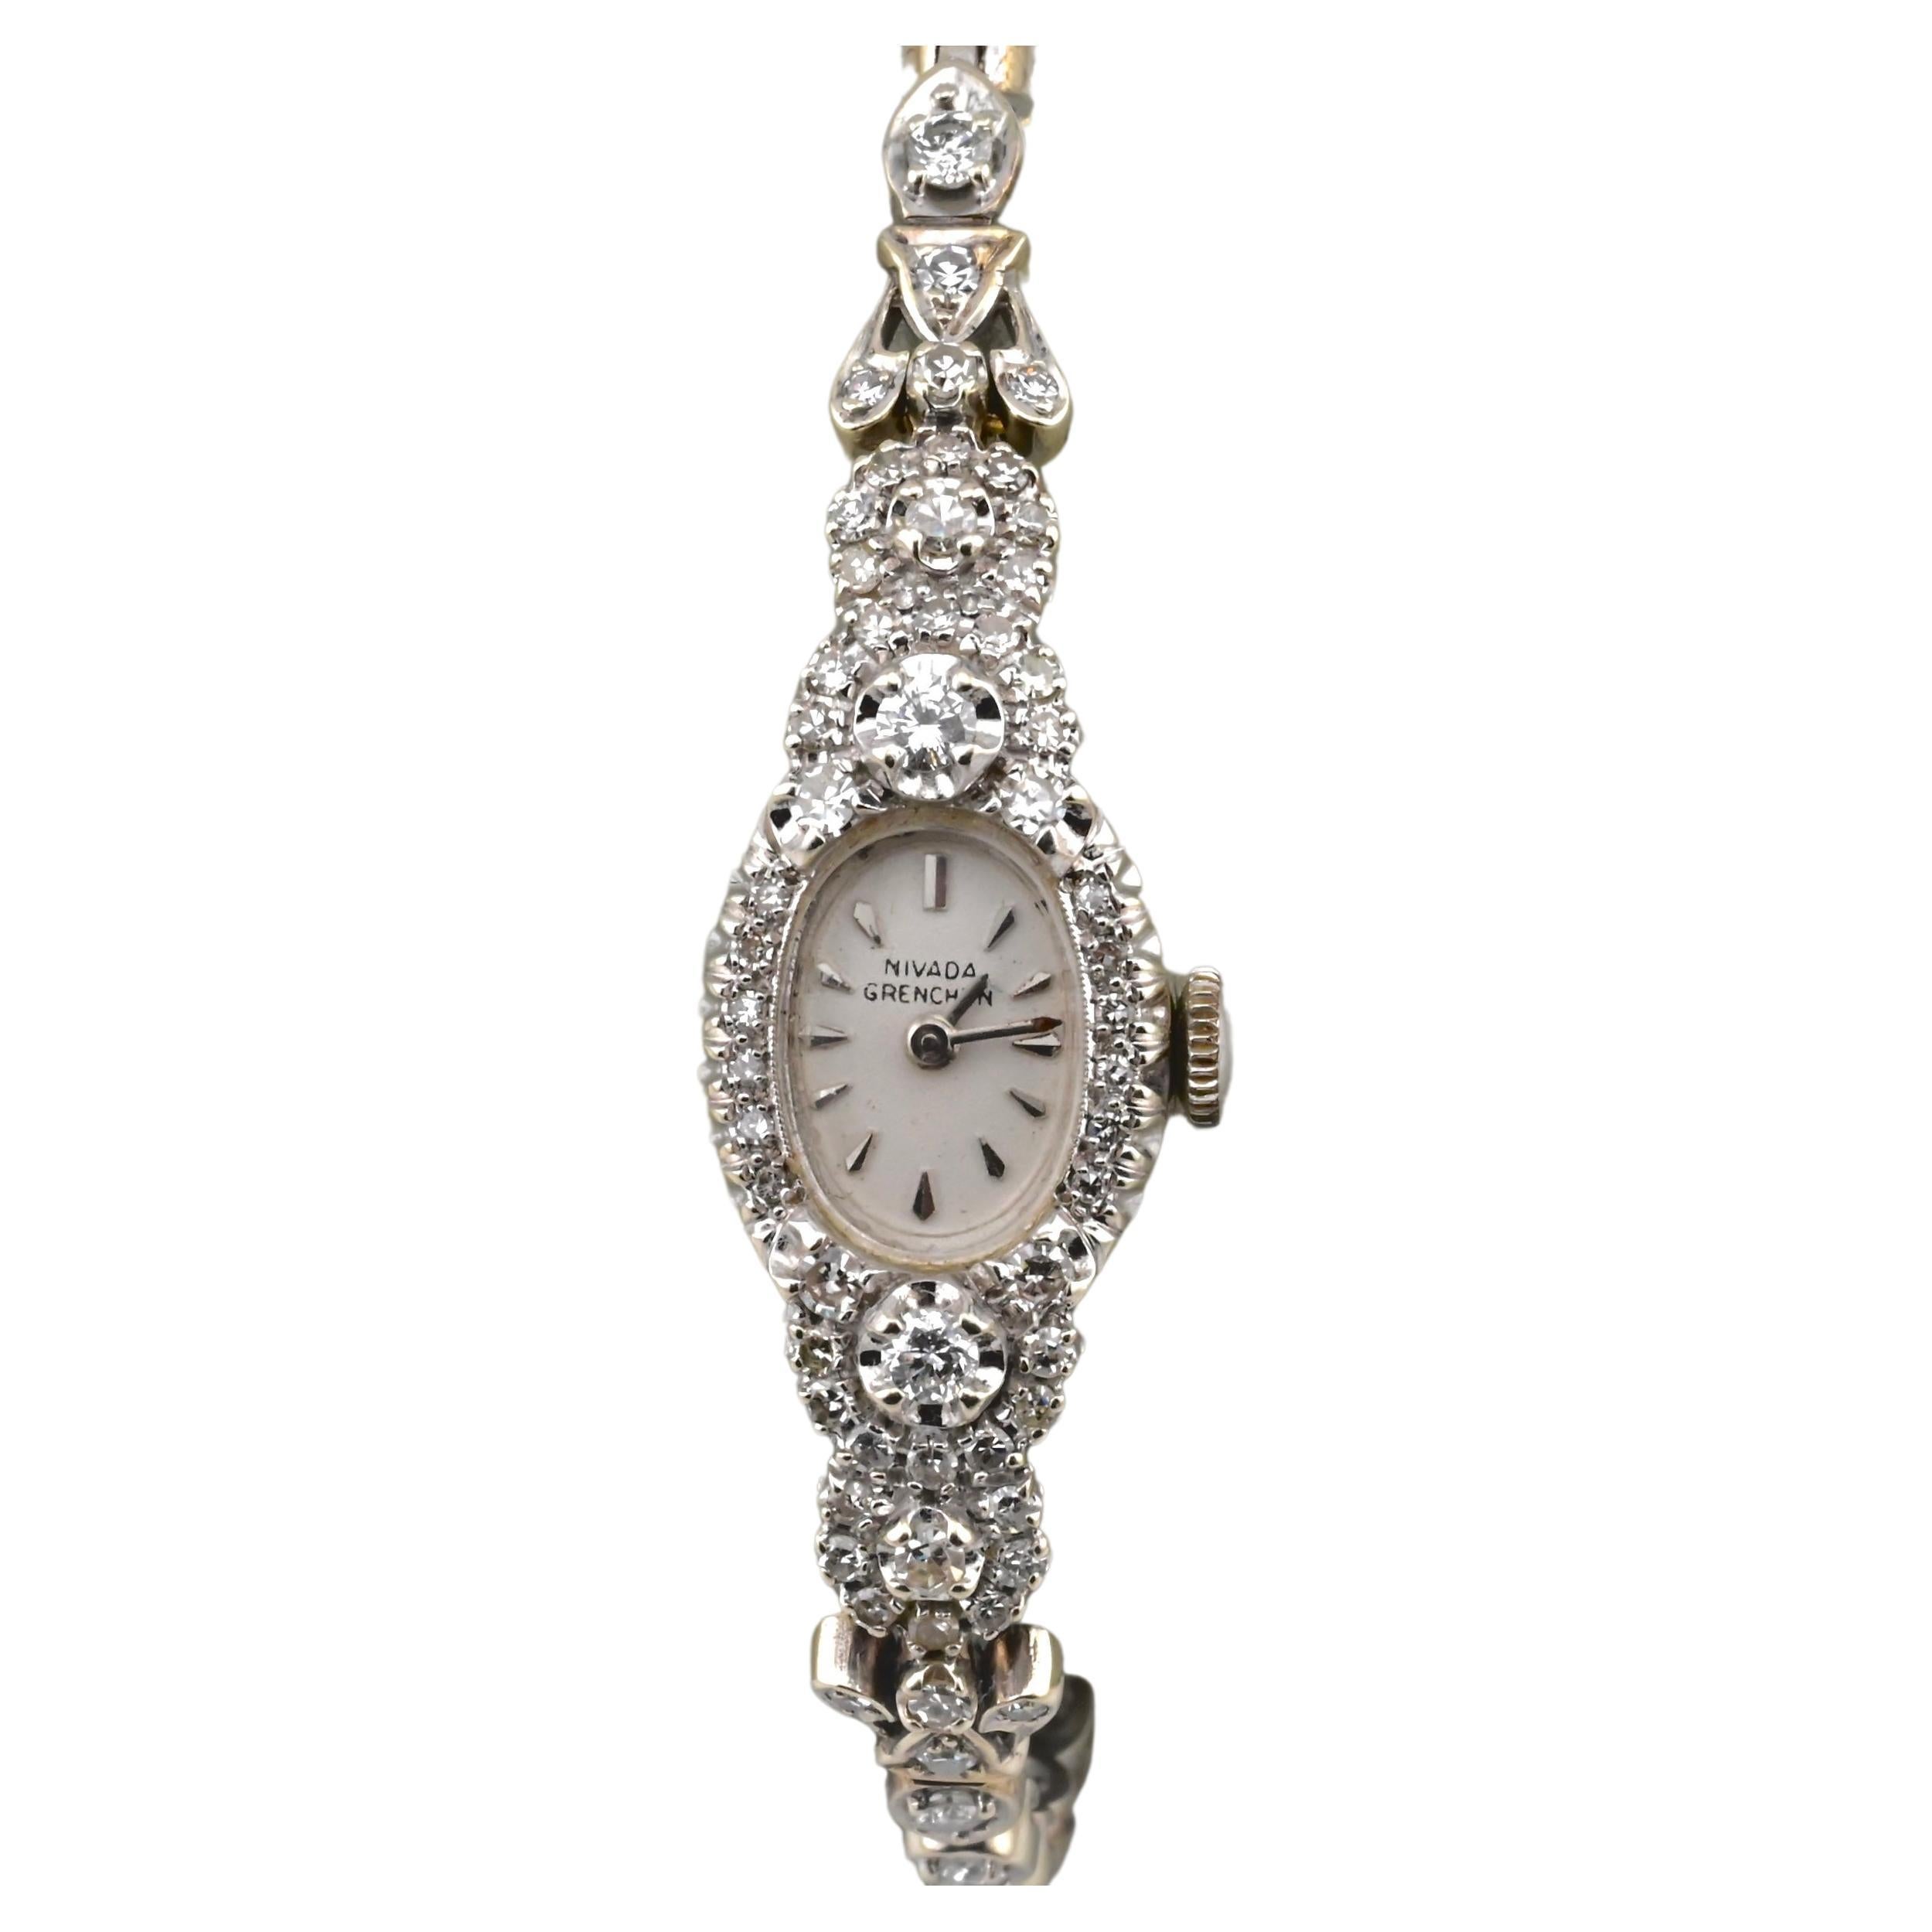 Atemberaubende Nivada Grenchen-Uhr aus Weißgold und Diamanten